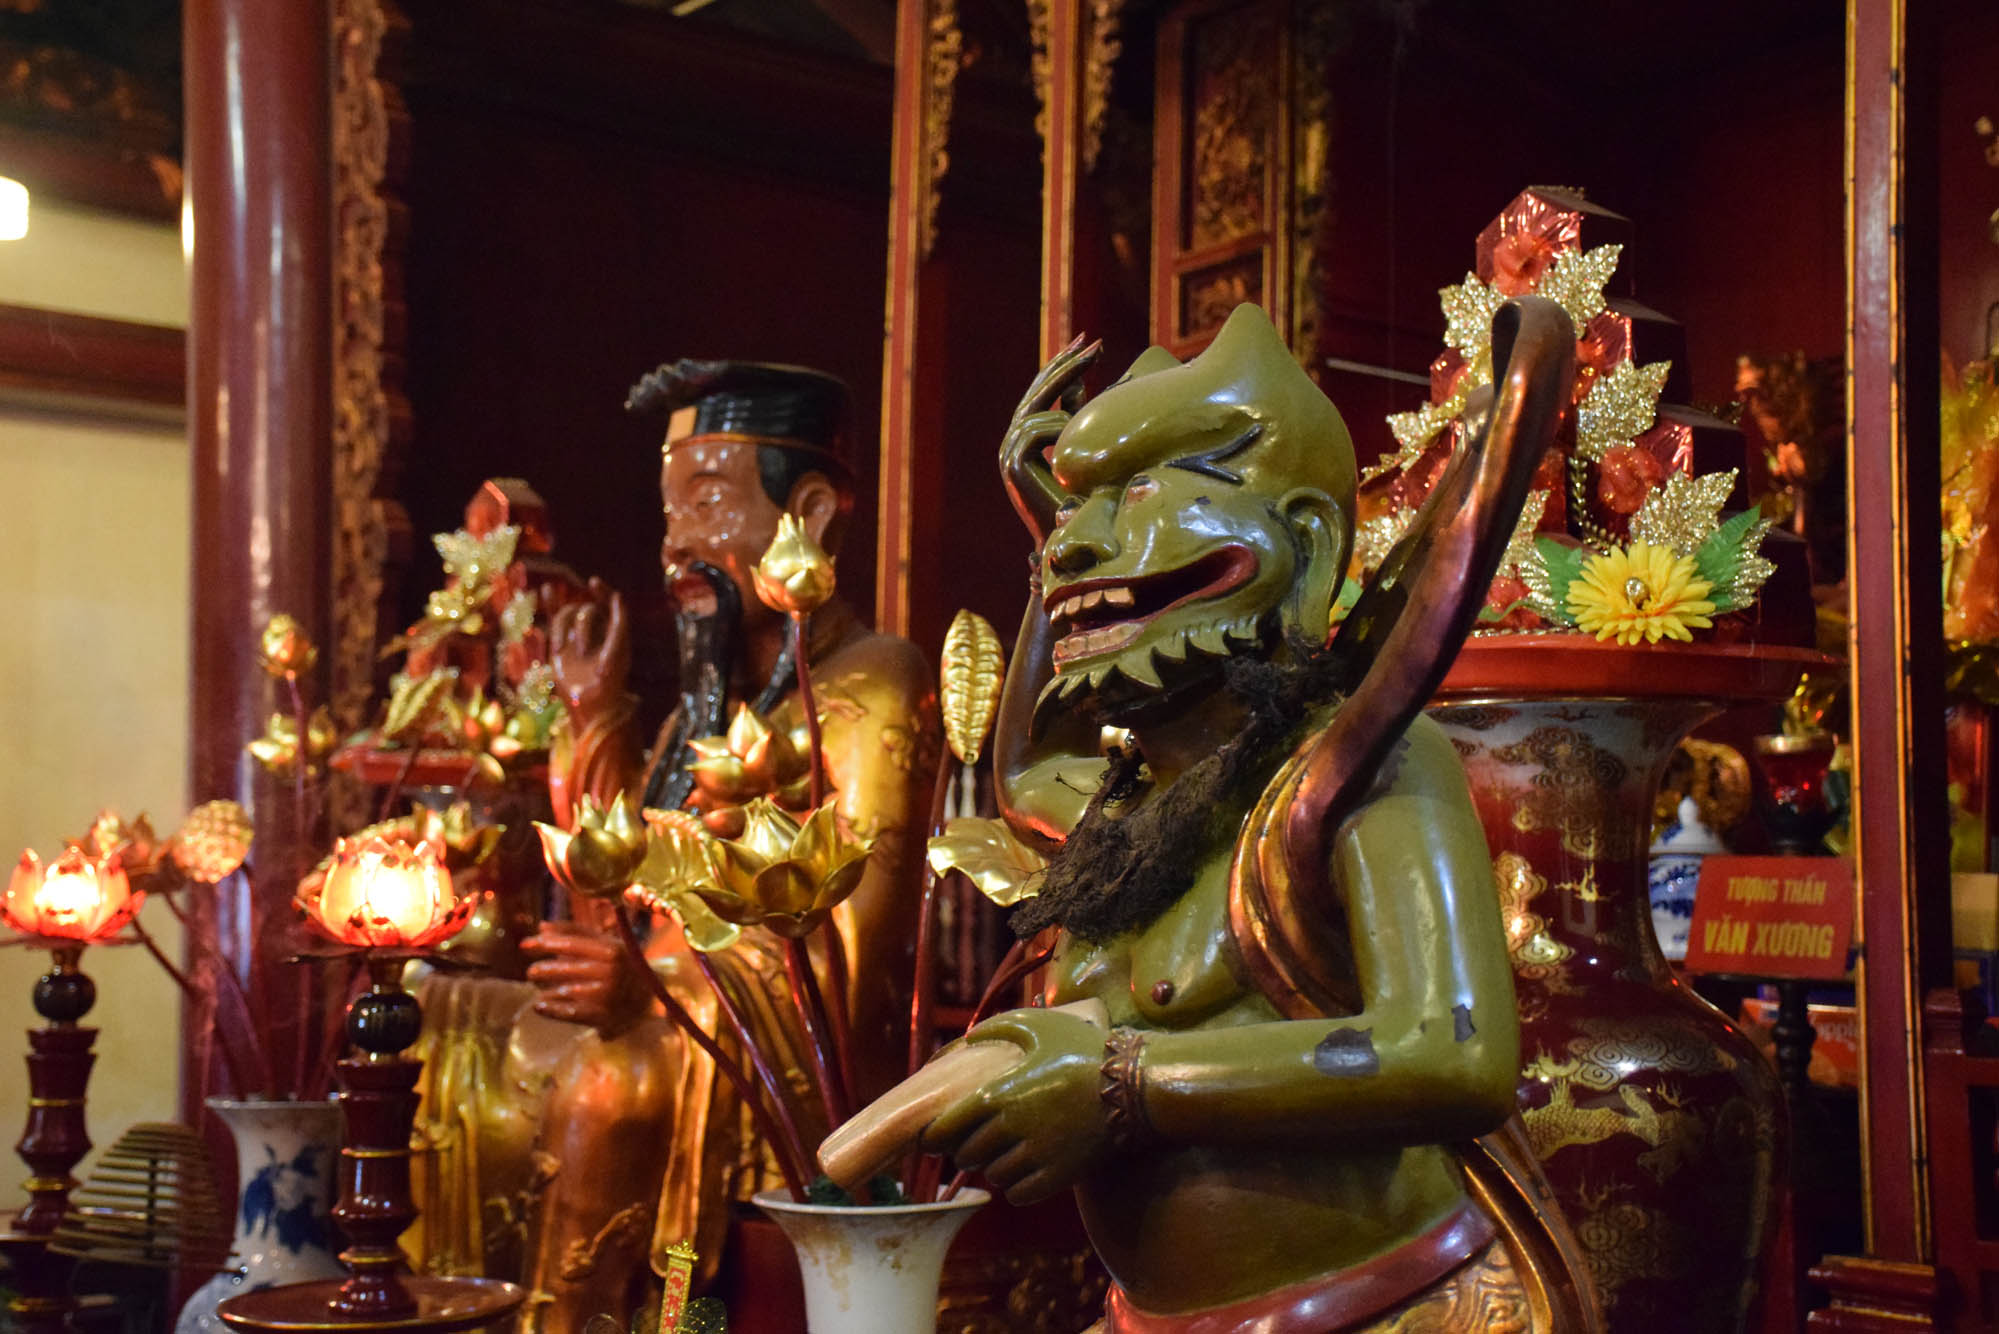 Dentro do Ngoc Son Temple, que fica em uma ilha no Lago Hoan Kiem